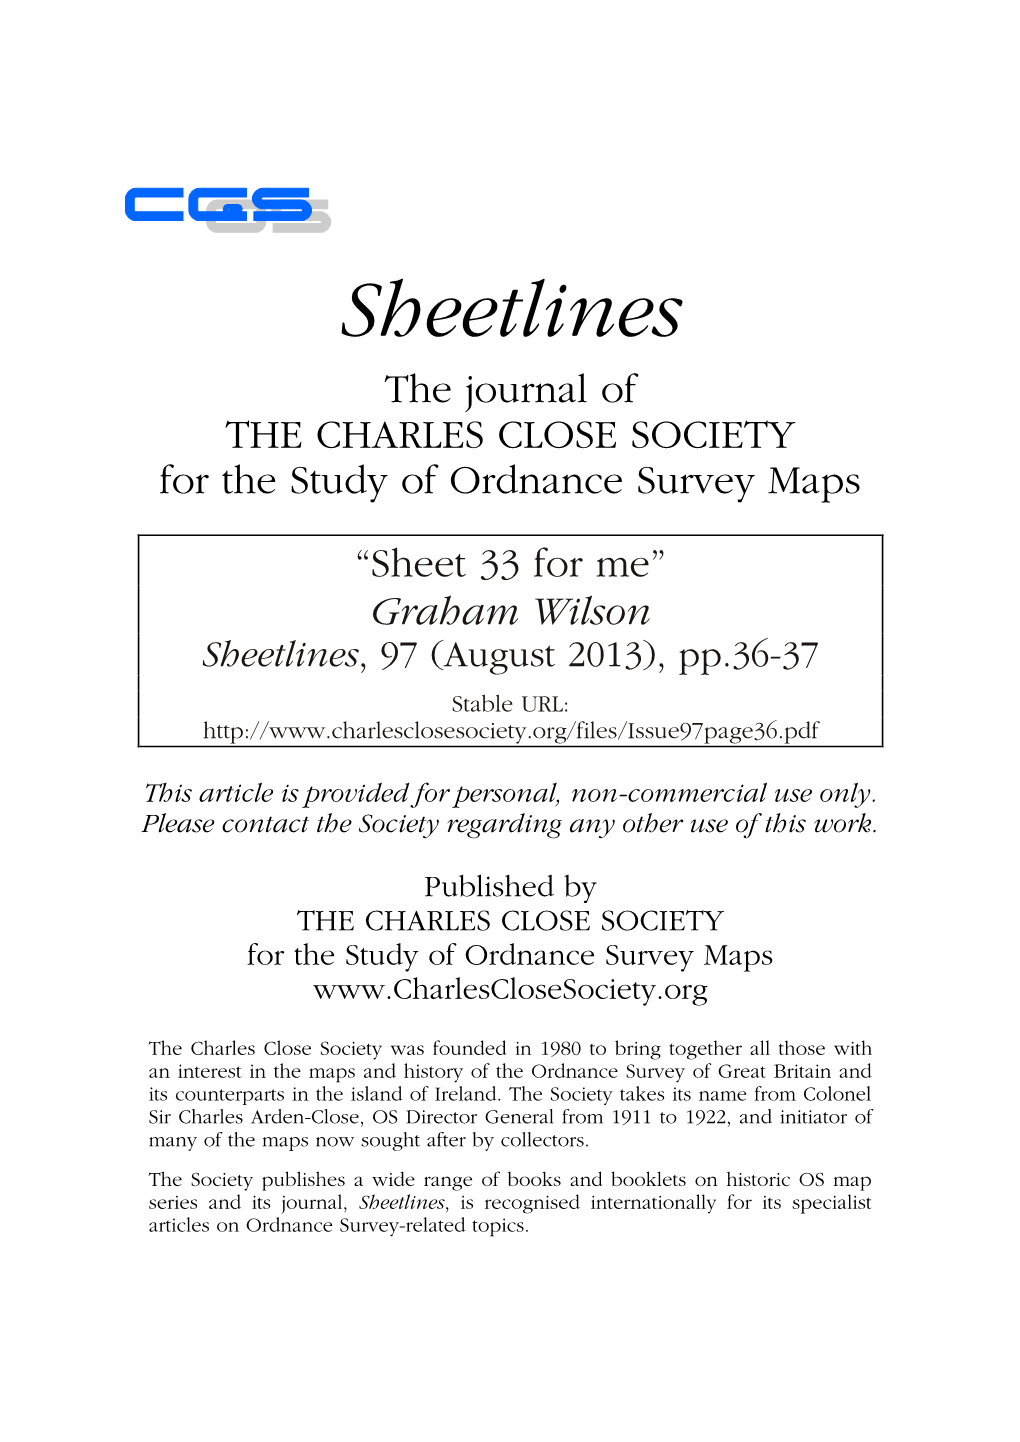 Sheet 33 for Me” Graham Wilson Sheetlines, 97 (August 2013), Pp.36-37 Stable URL